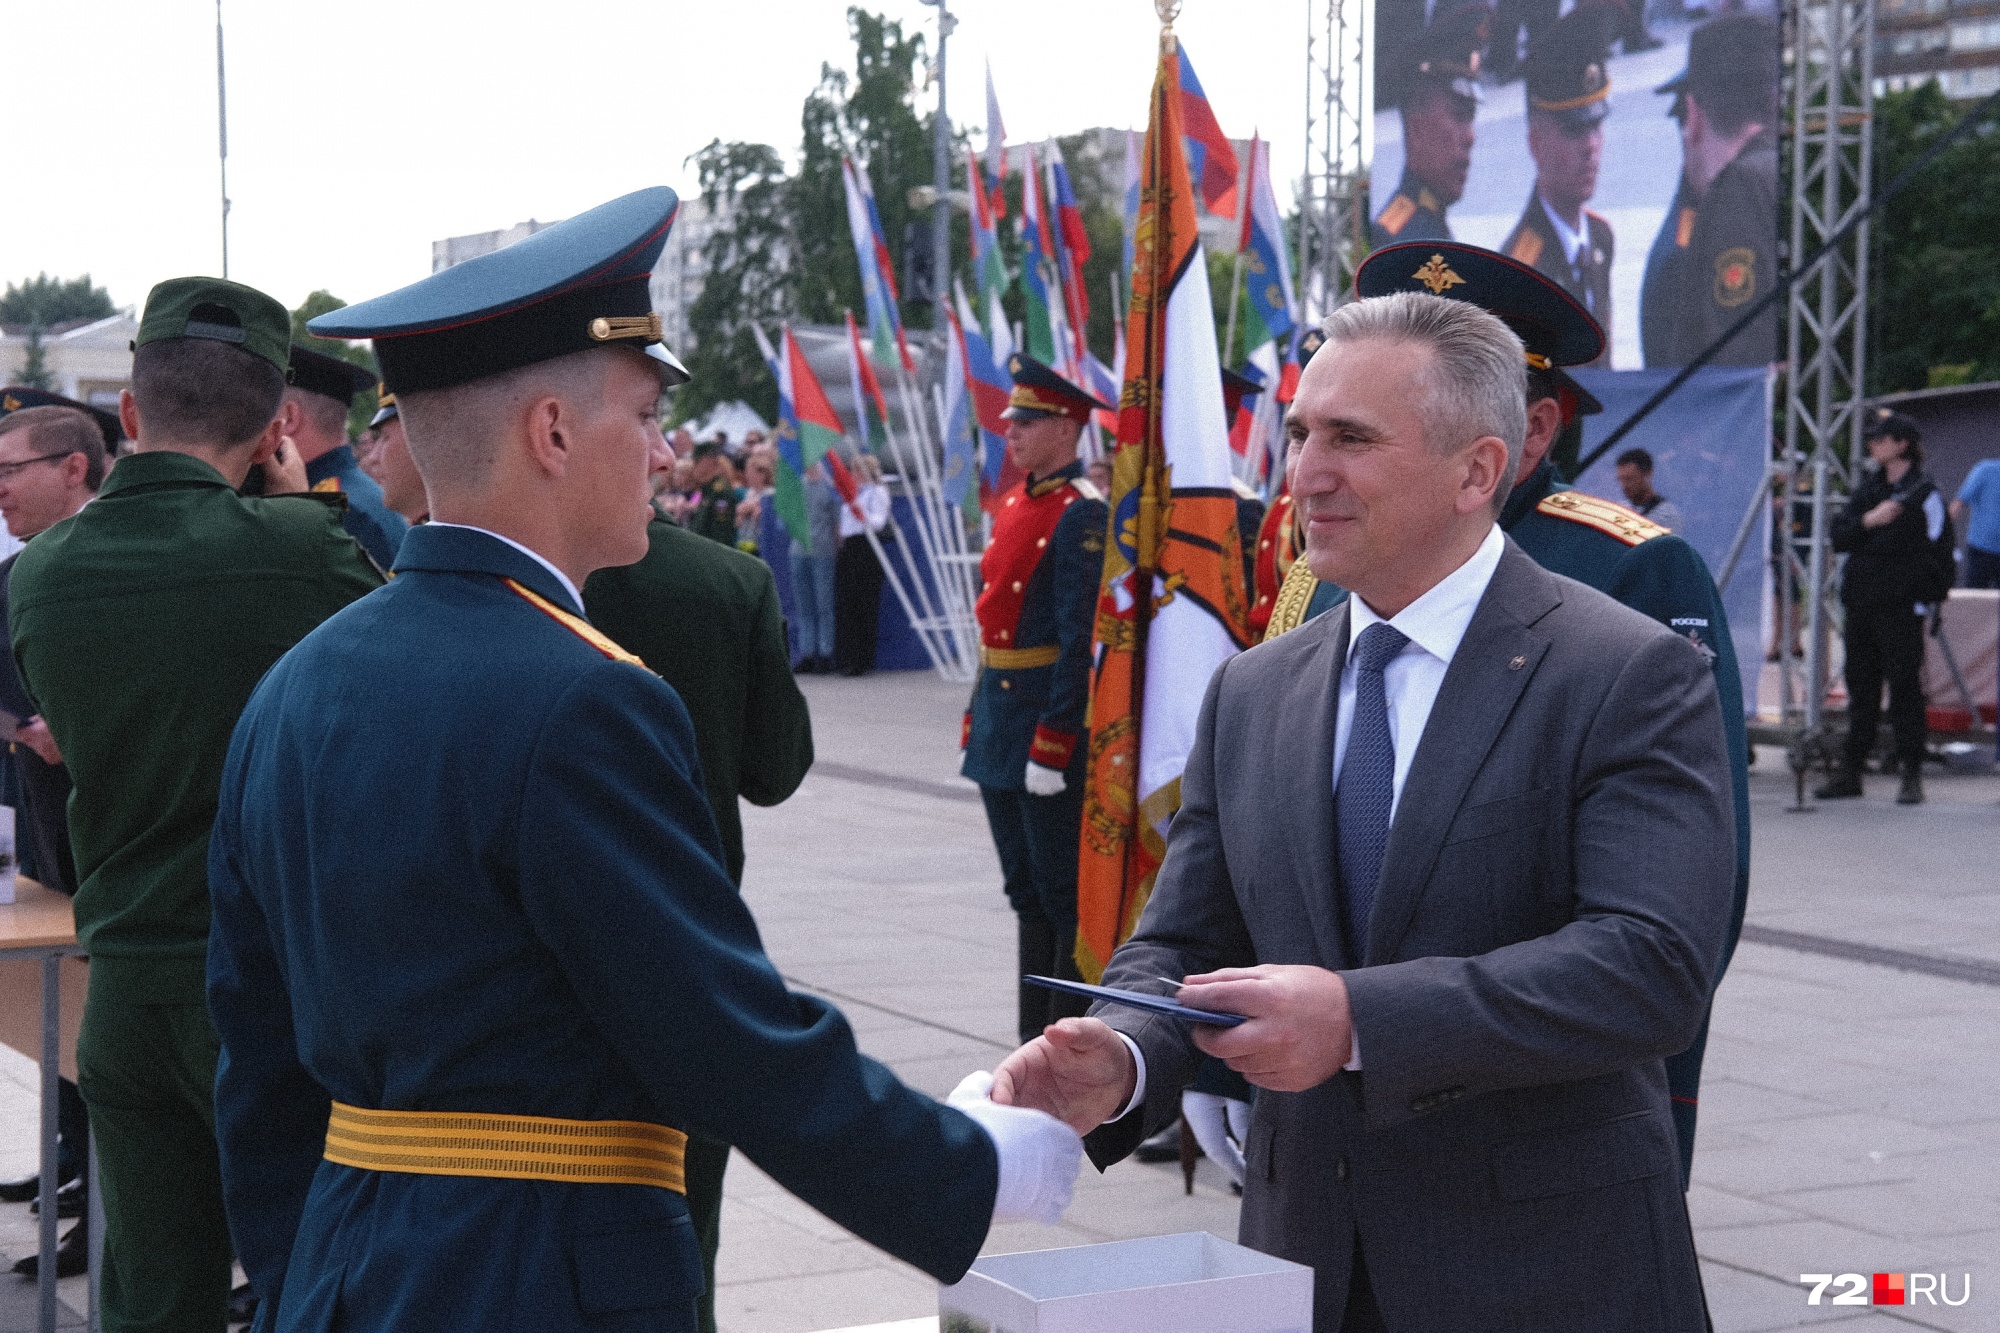 Дипломы выпускникам вручил и губернатор Александр Моор